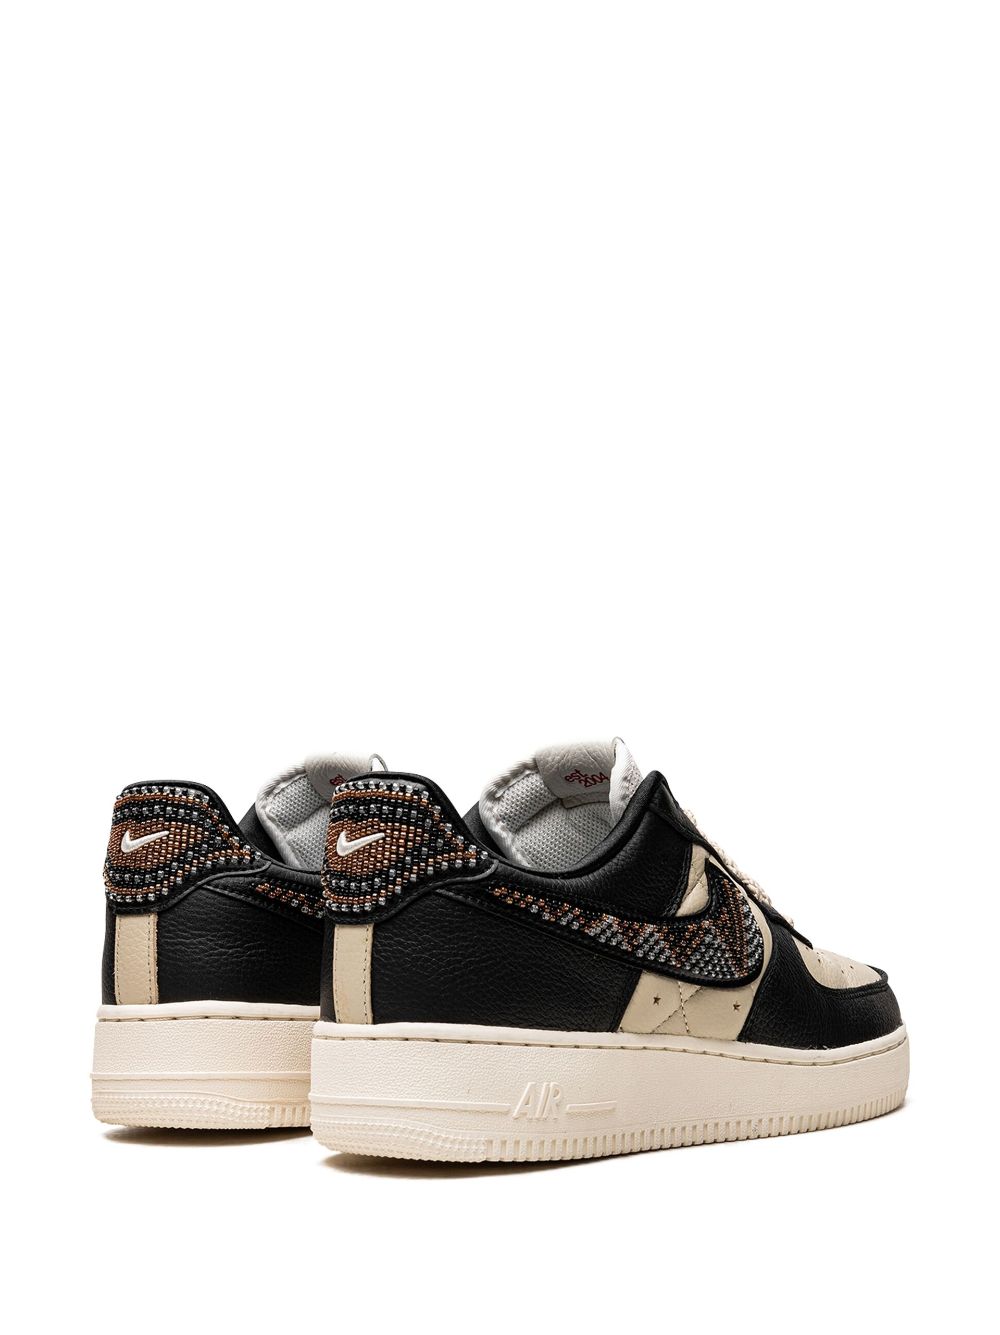 Shop Jordan X Premium Goods Air Force 1 Sp "the Sophia" Sneakers In Black